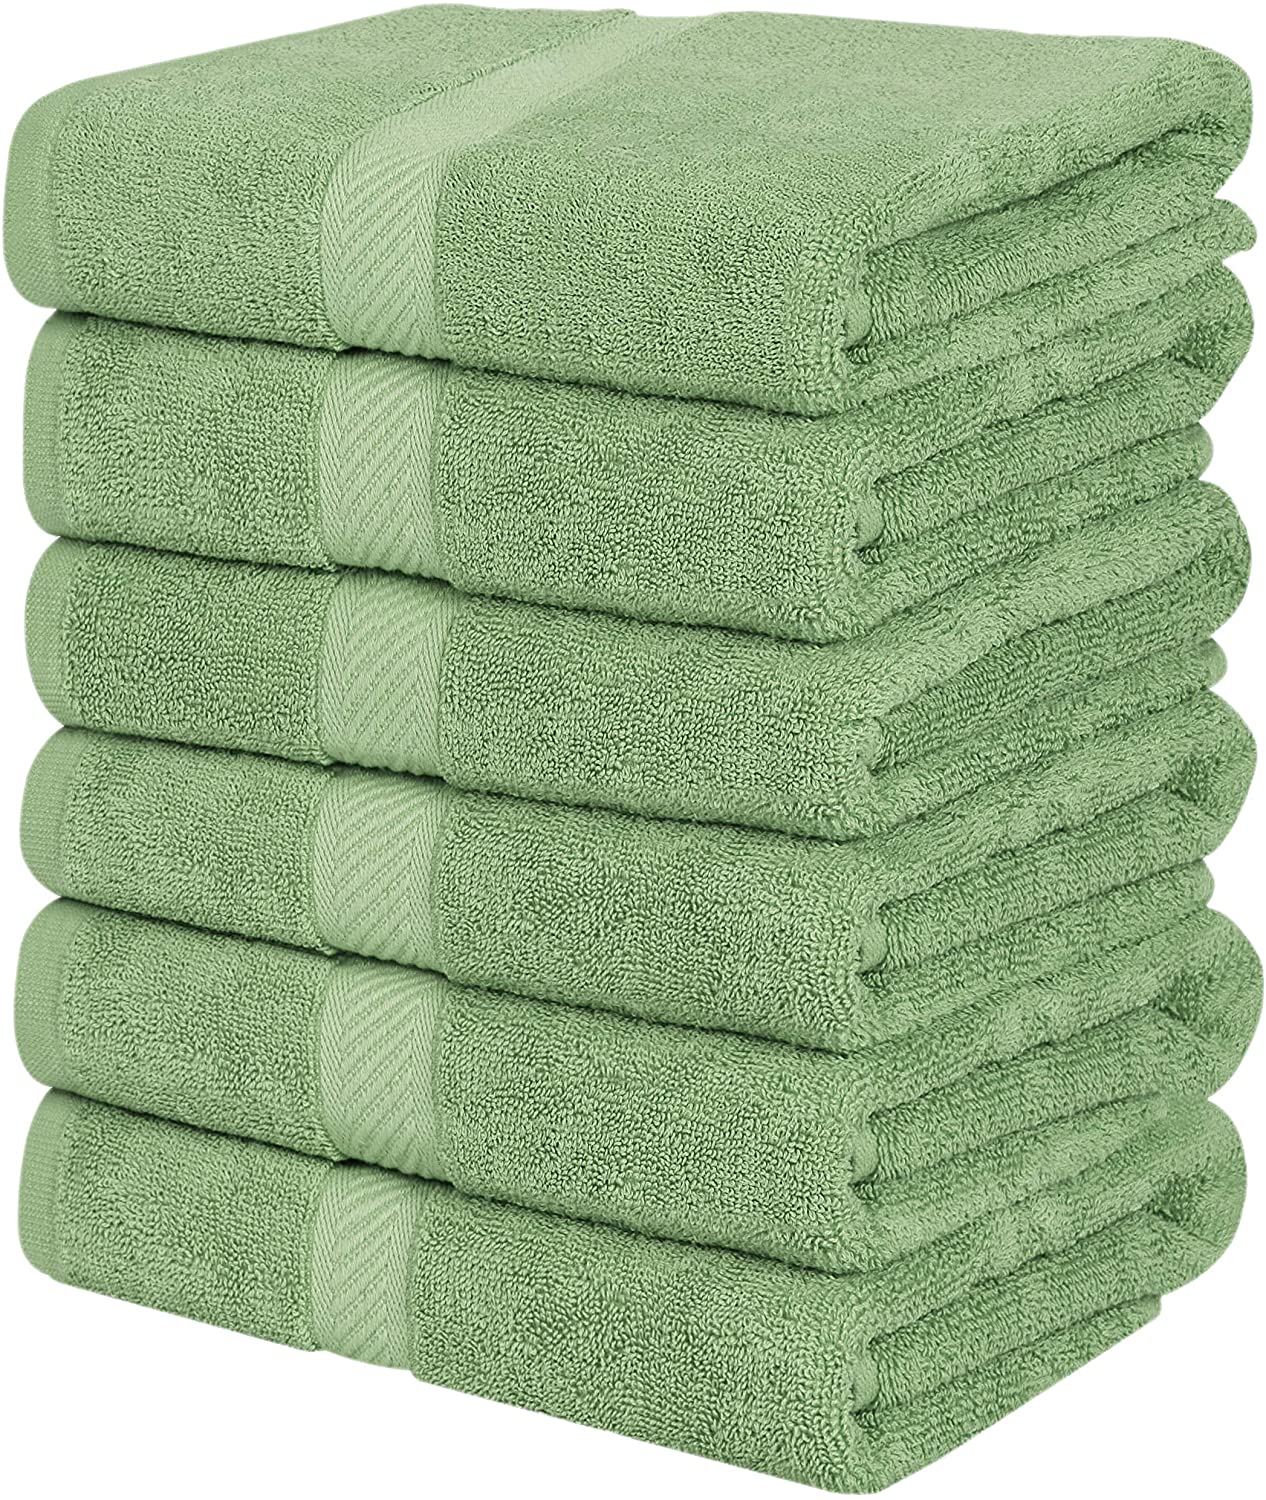 Utopia Towels Cotton Bath Towels